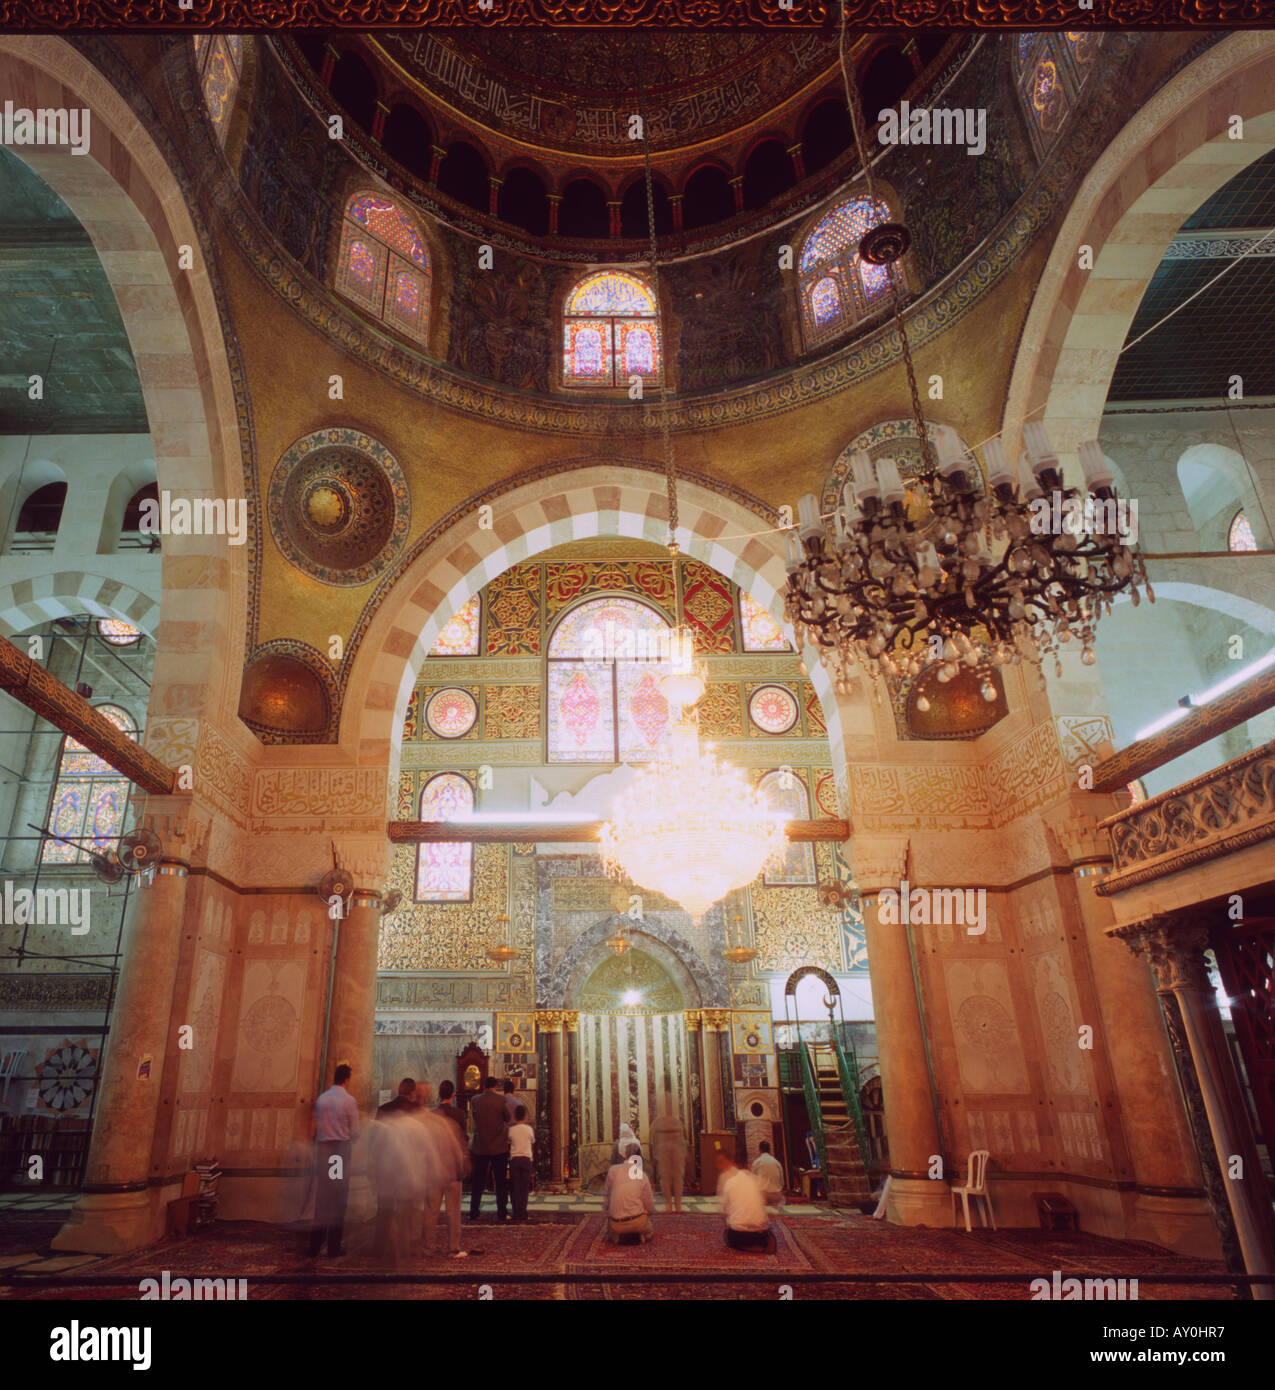 Al Aqsa Grand Mosque Interior Stock Photo